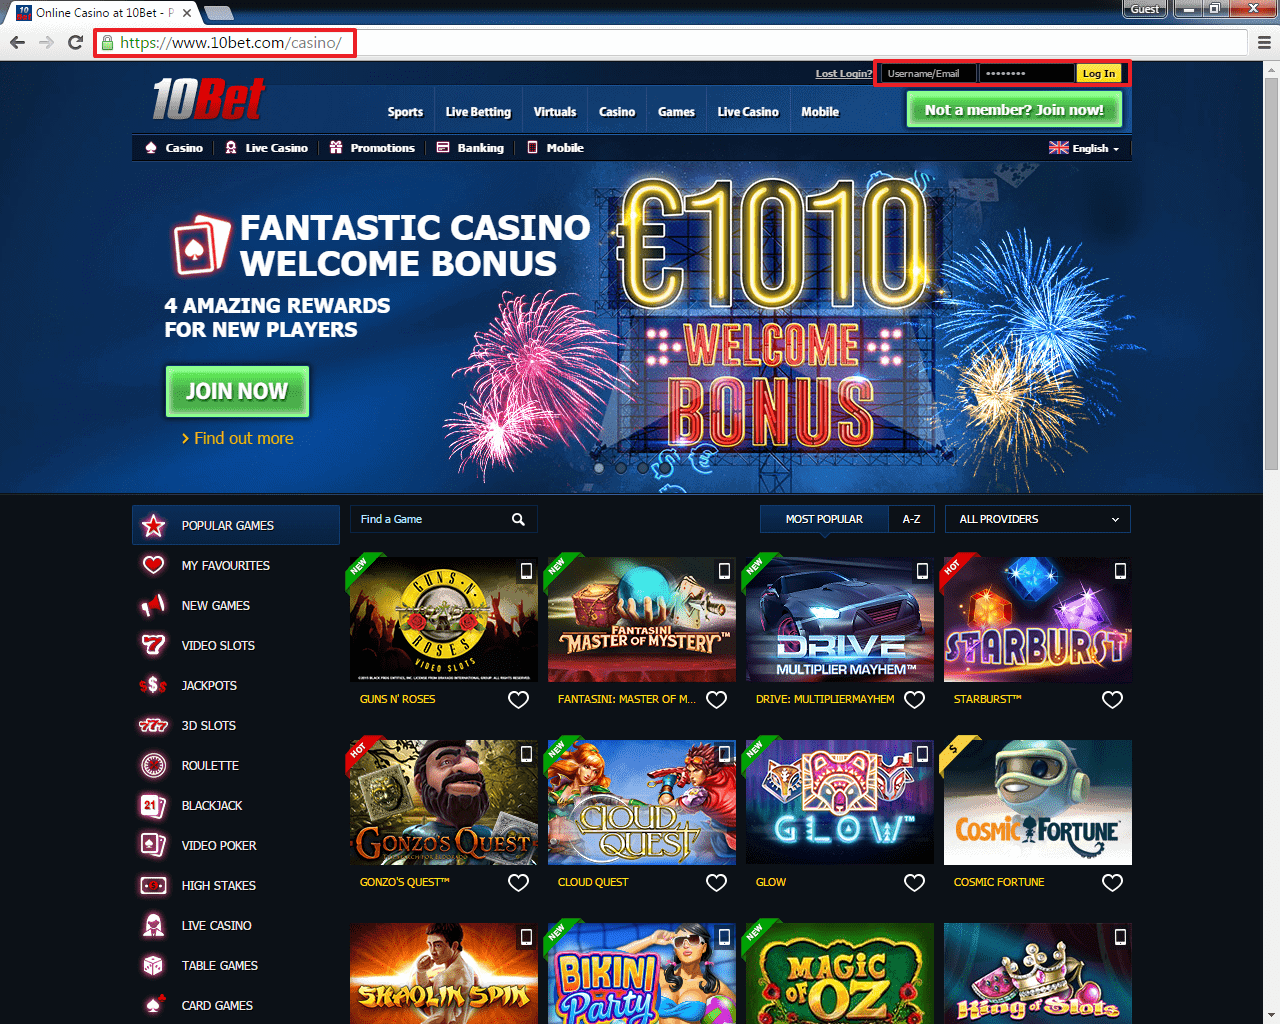 Казино Jinobet Casino - играть онлайн бесплатно, официальный сайт, скачать клиент